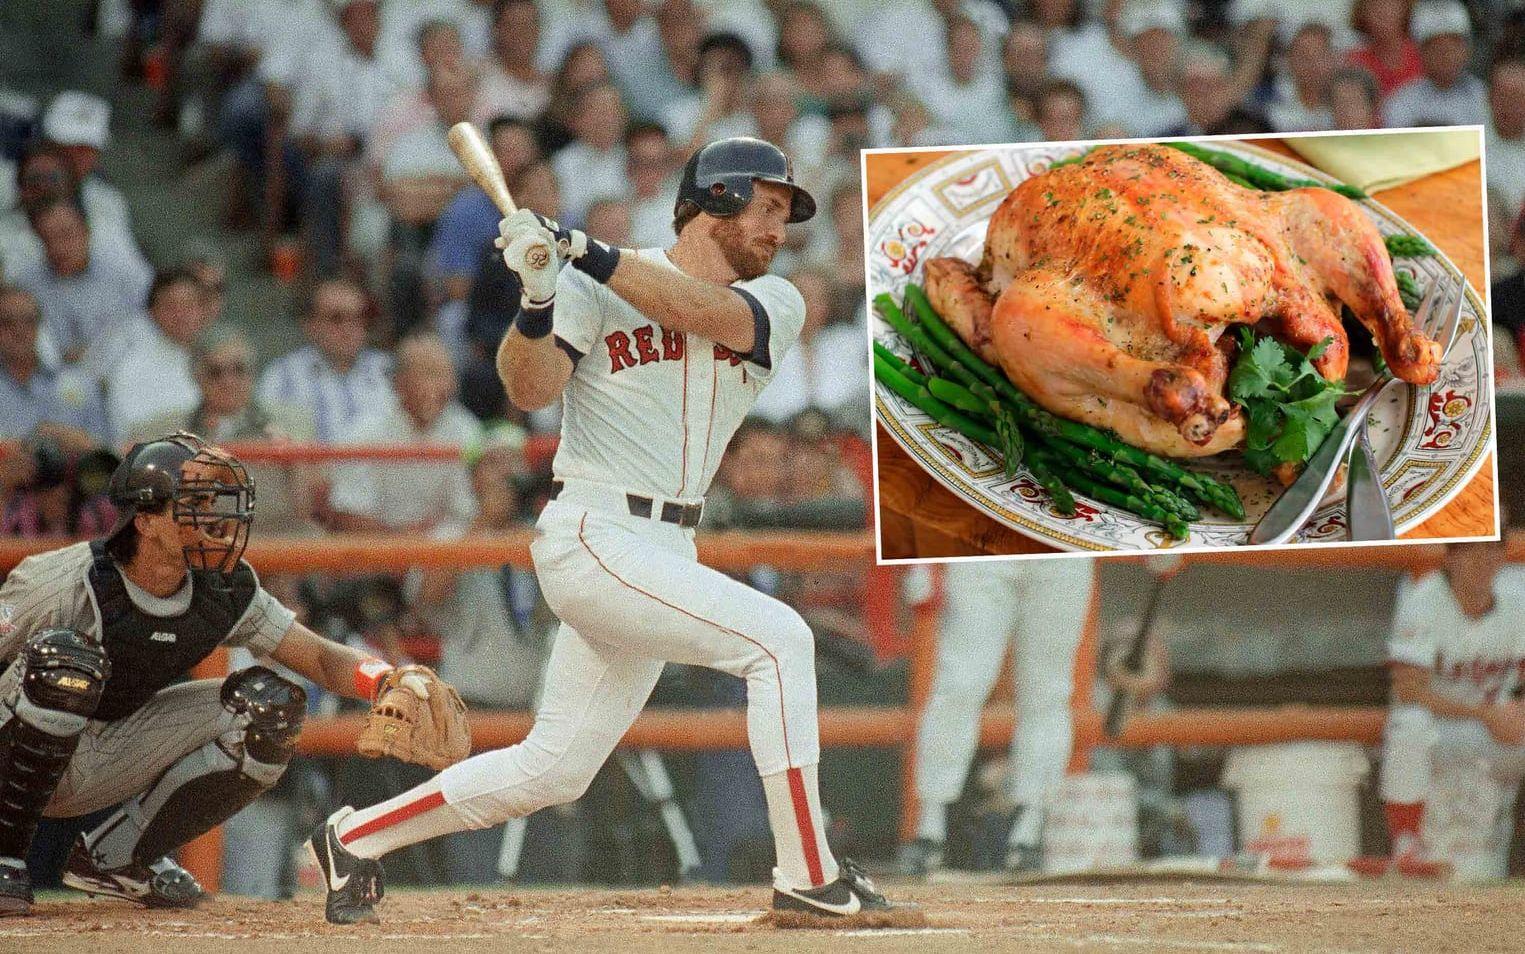 Kyckling kyckling kyckling... MLB-stjärnan Wade Boggs åt kyckling före varje match. Det sägs att hans fru hade 40 olika recept för variera kosten lite för den vidskeplige maken. Foto: TT